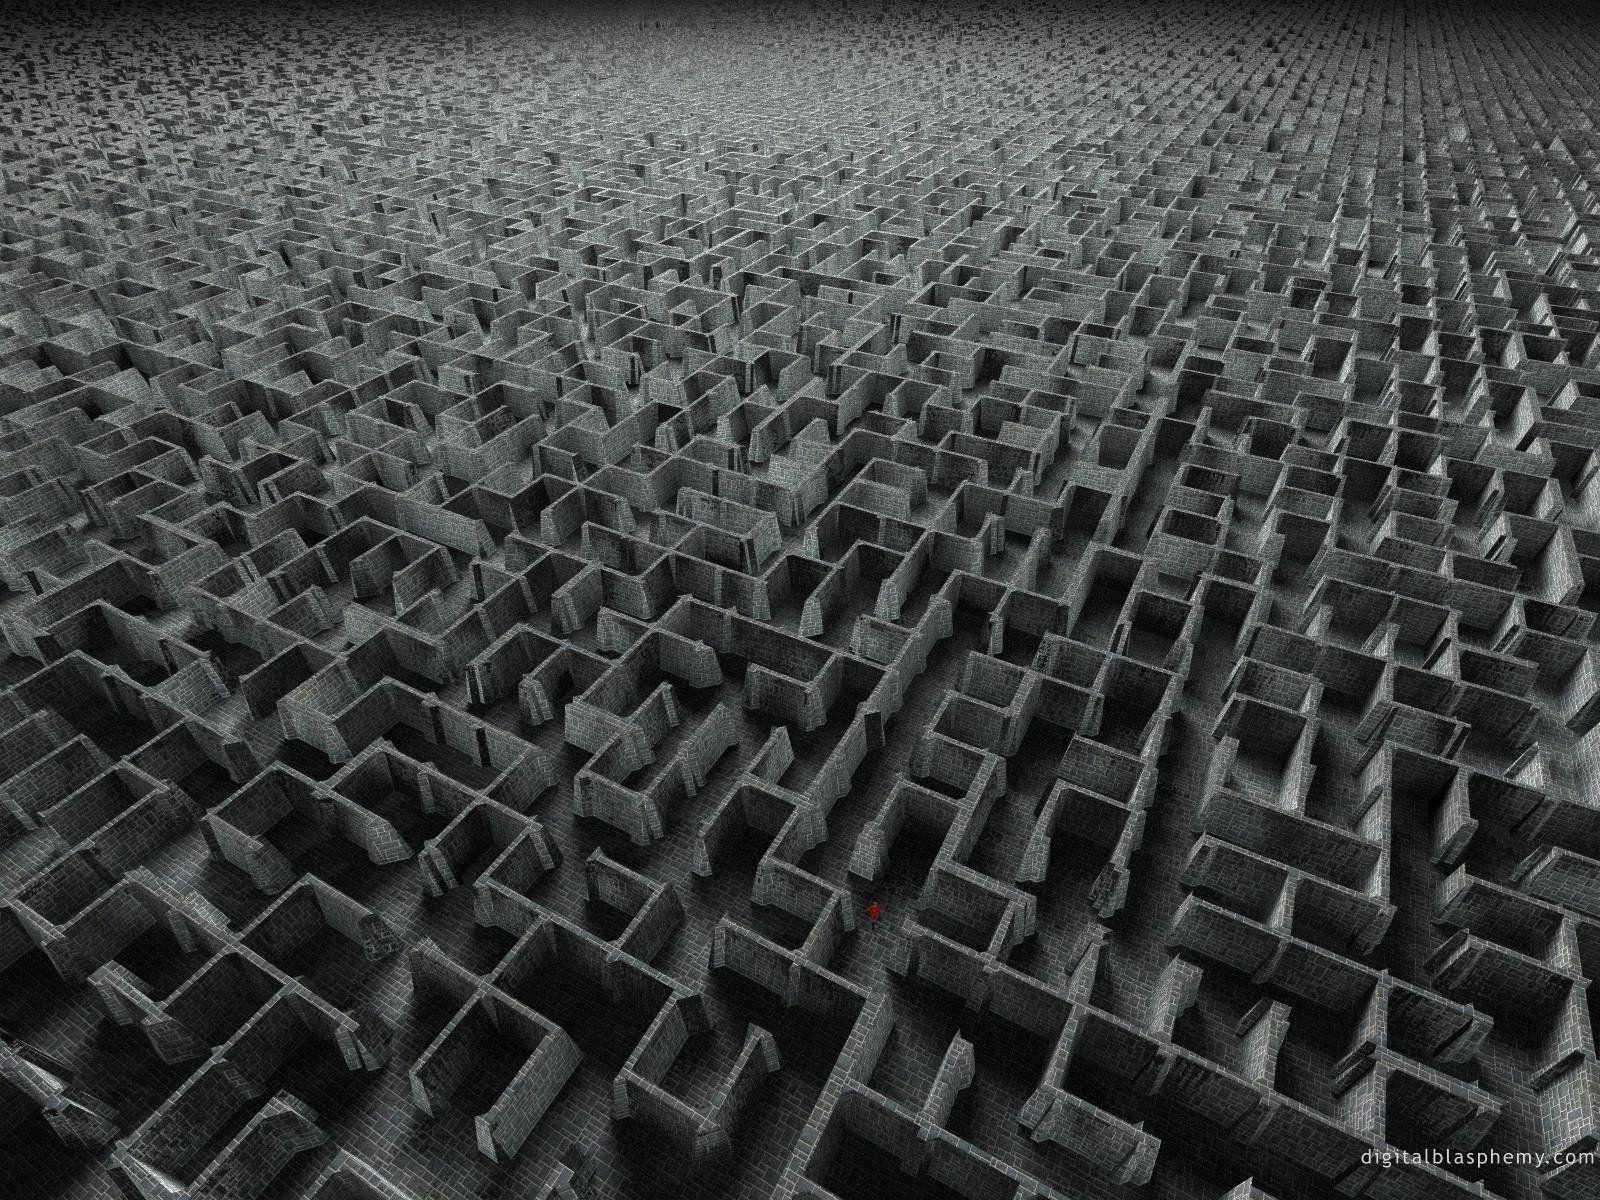 HD Digital Desktop screensaver image Giger's Maze